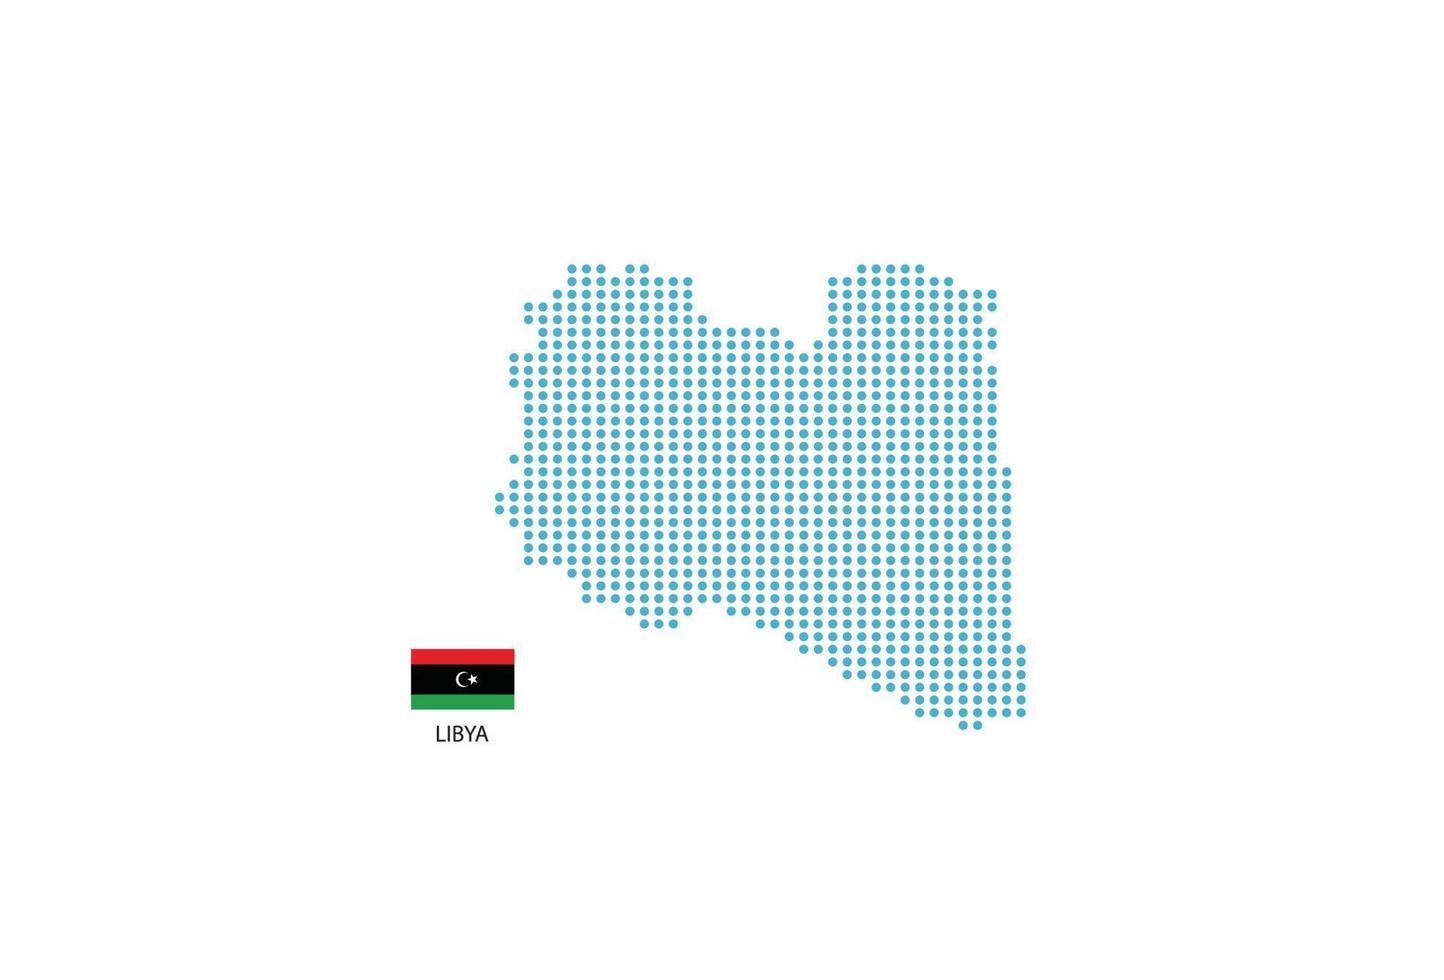 conception de carte de libye cercle bleu, fond blanc avec le drapeau de la libye. vecteur